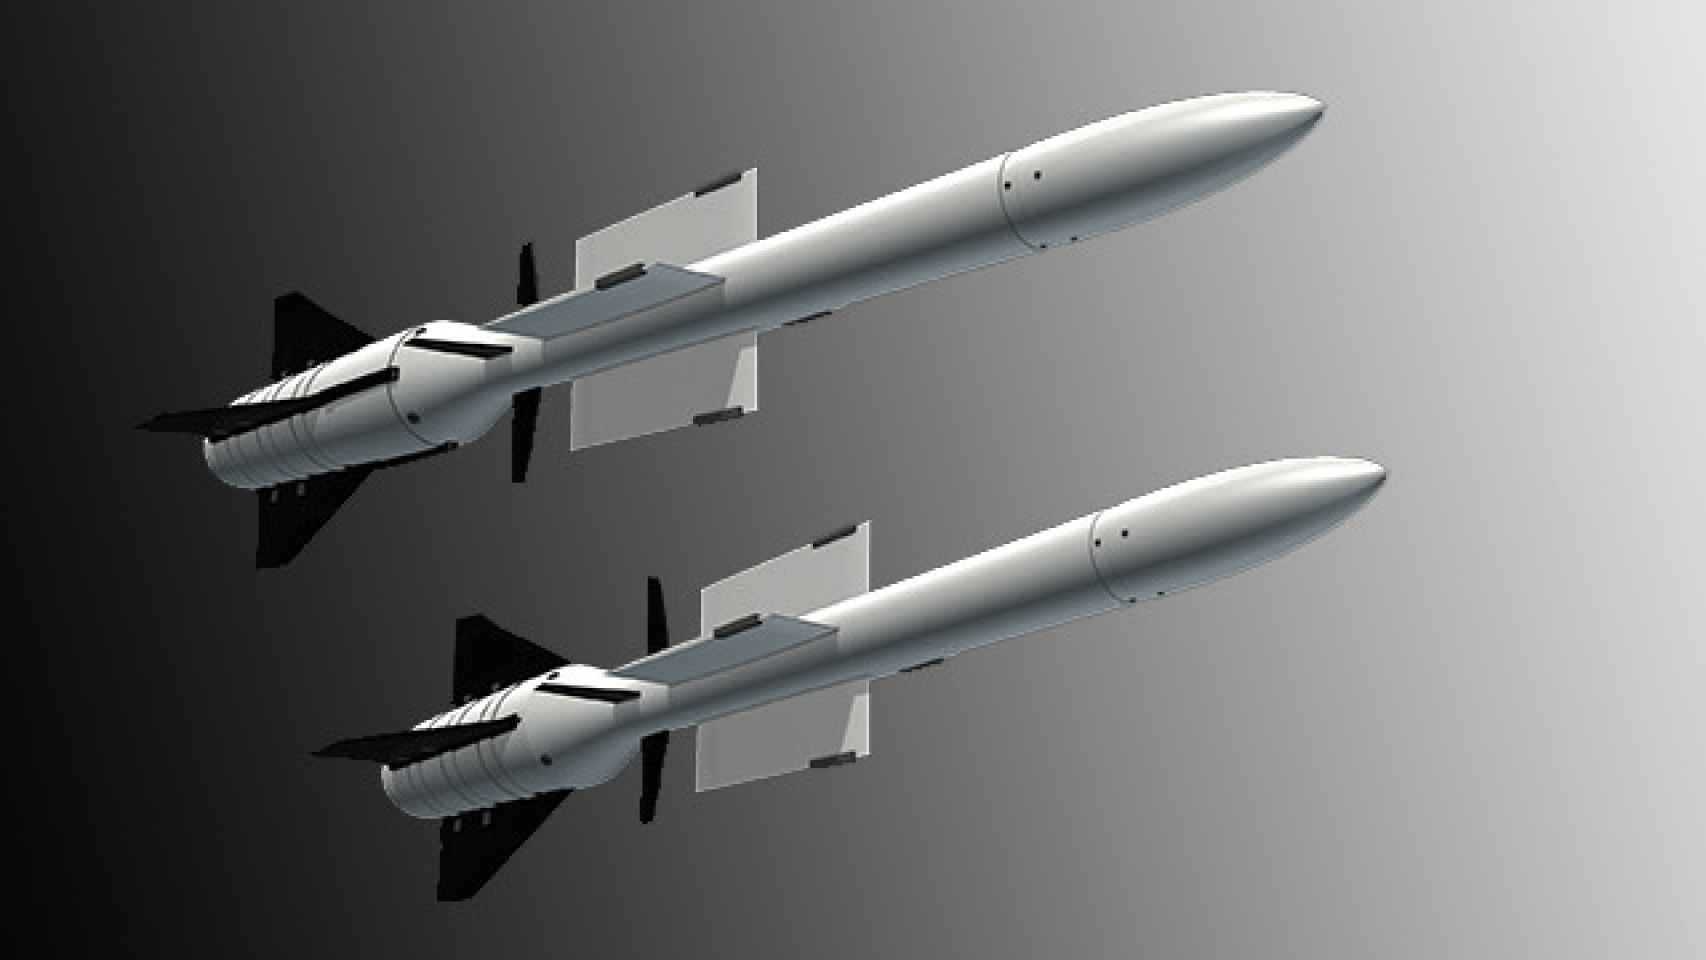 Dos misiles Aster en los que está basado el Aquila